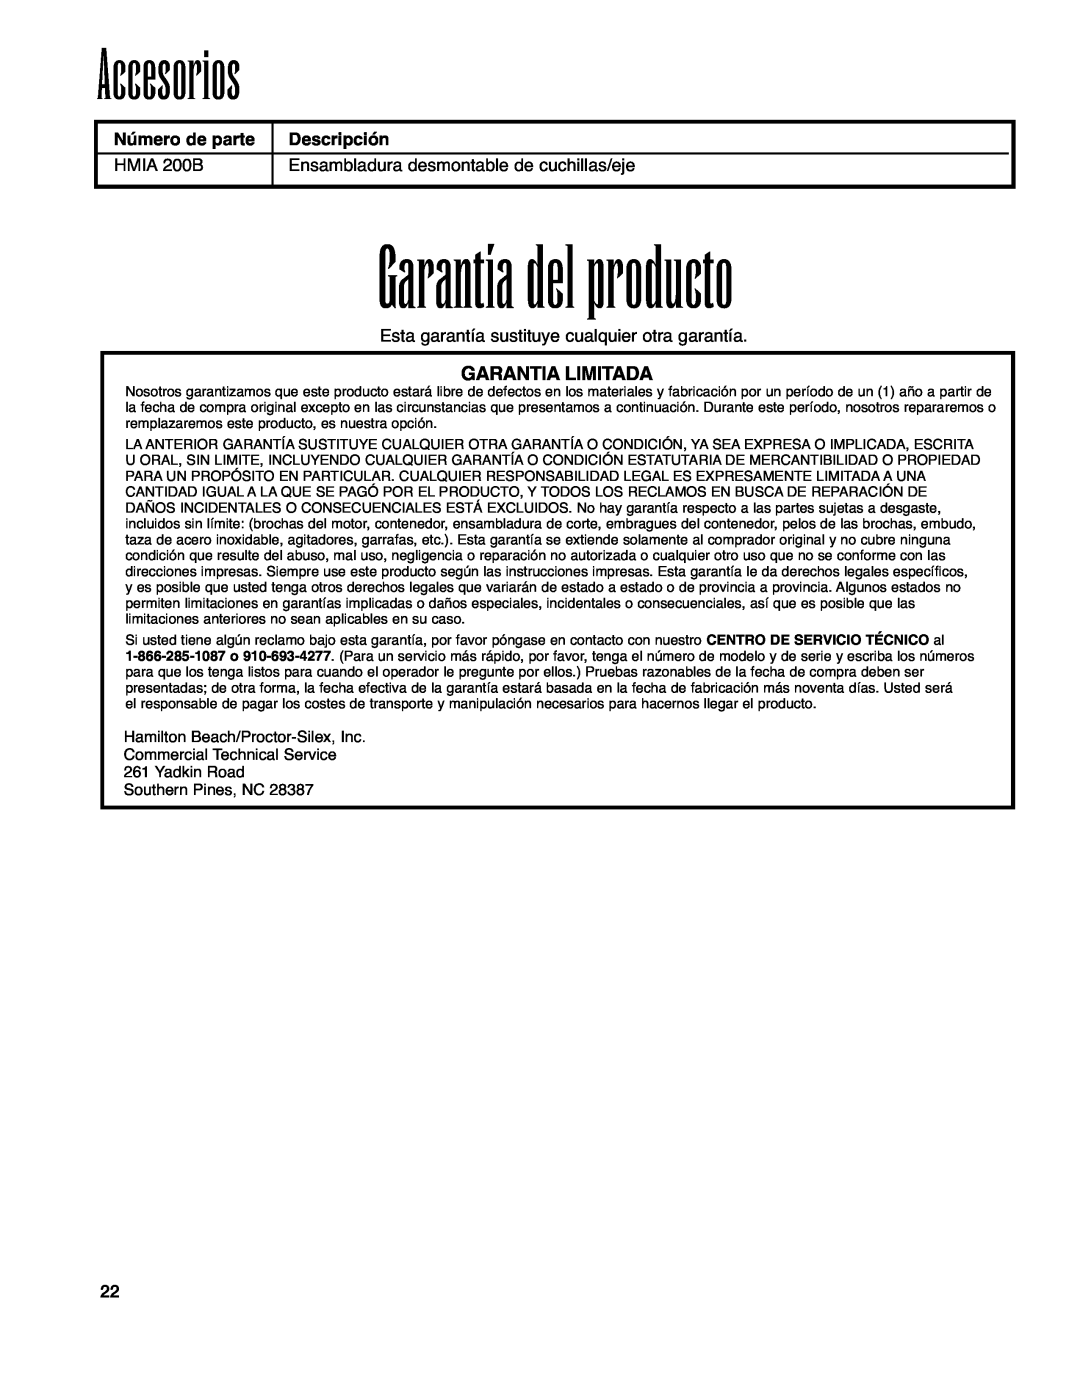 Hamilton Beach Immersion Mixer operation manual Garantía del producto, Accesorios, Garantia Limitada 